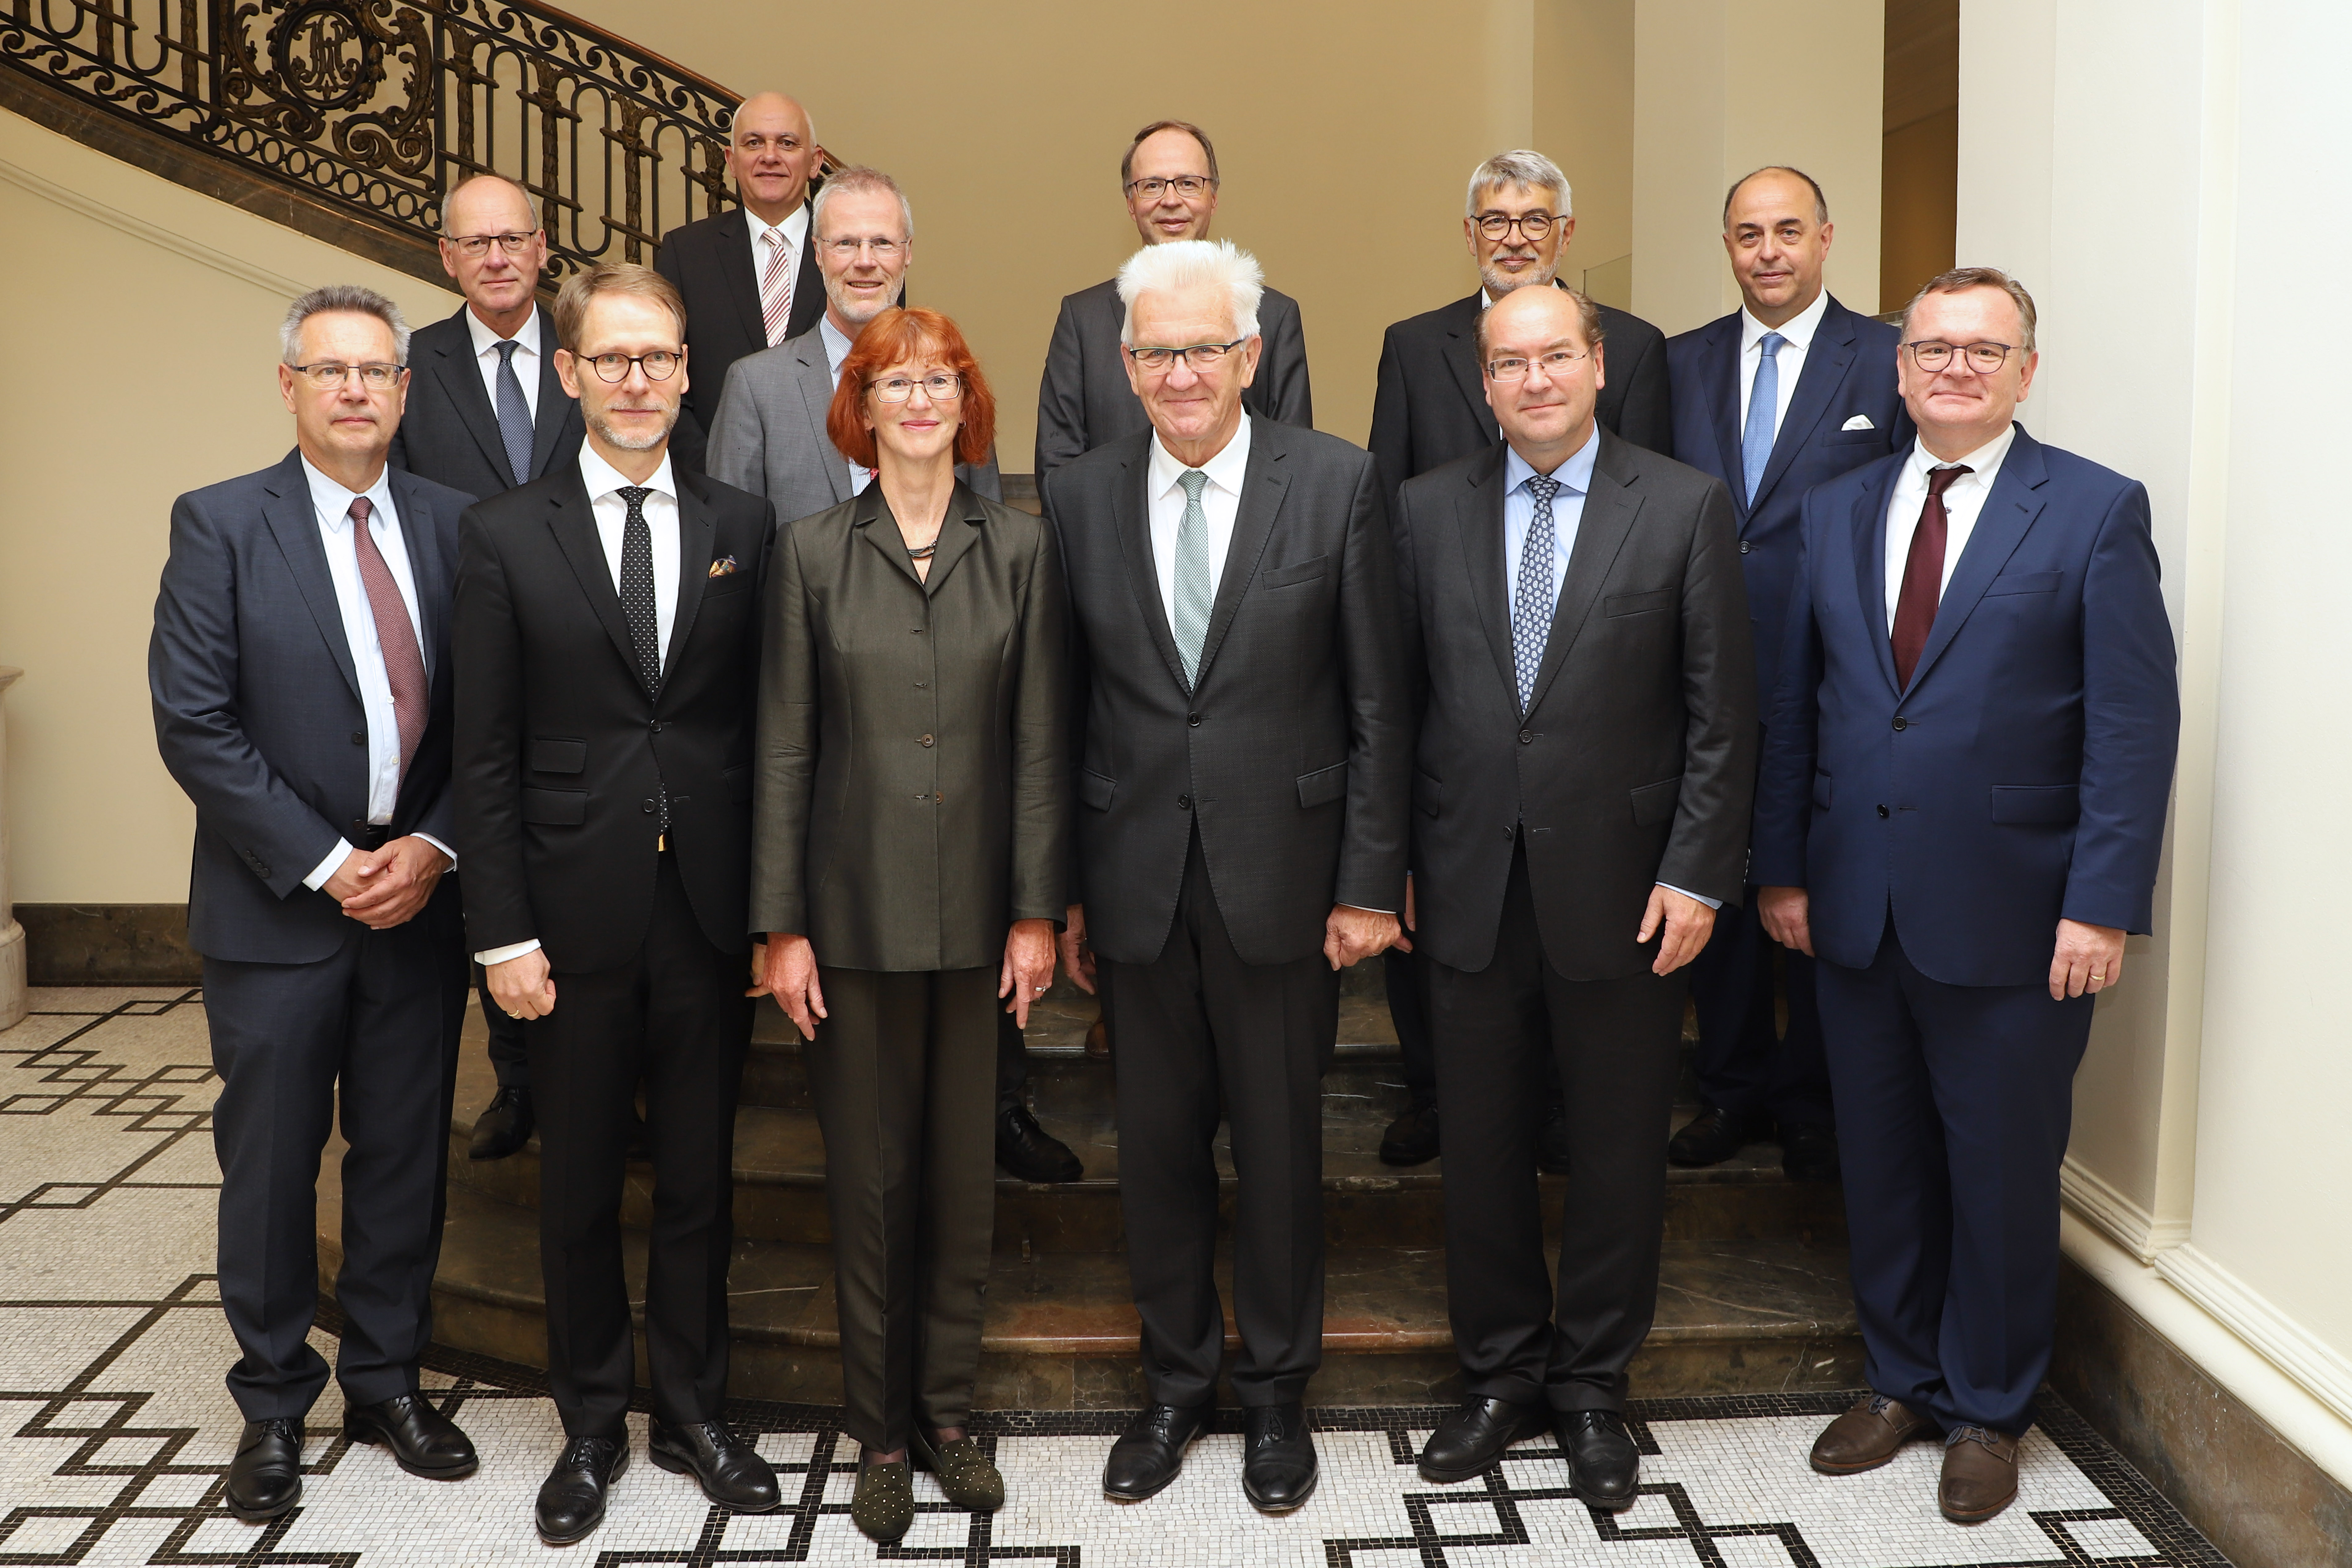 Empfang der Präsidentinnen und Präsidenten der Obergerichte und den Generalstaatsanwälten Baden-Württembergs am 11. Juli 2019 in der Villa Reitzenstein in Stuttgart